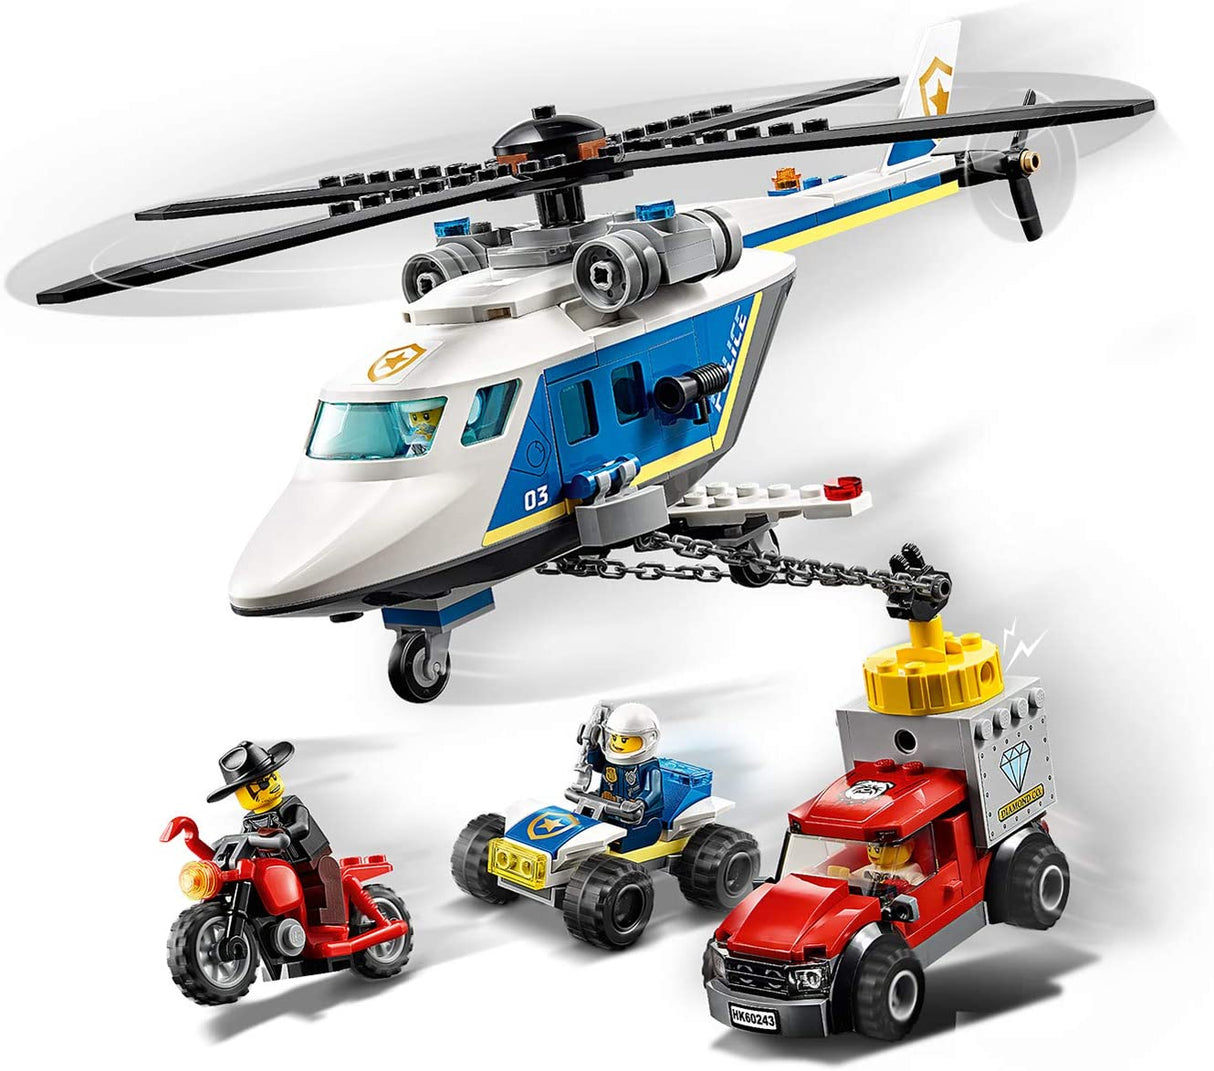 LEGO City Police 60243 Perseguição Policial de Helicóptero